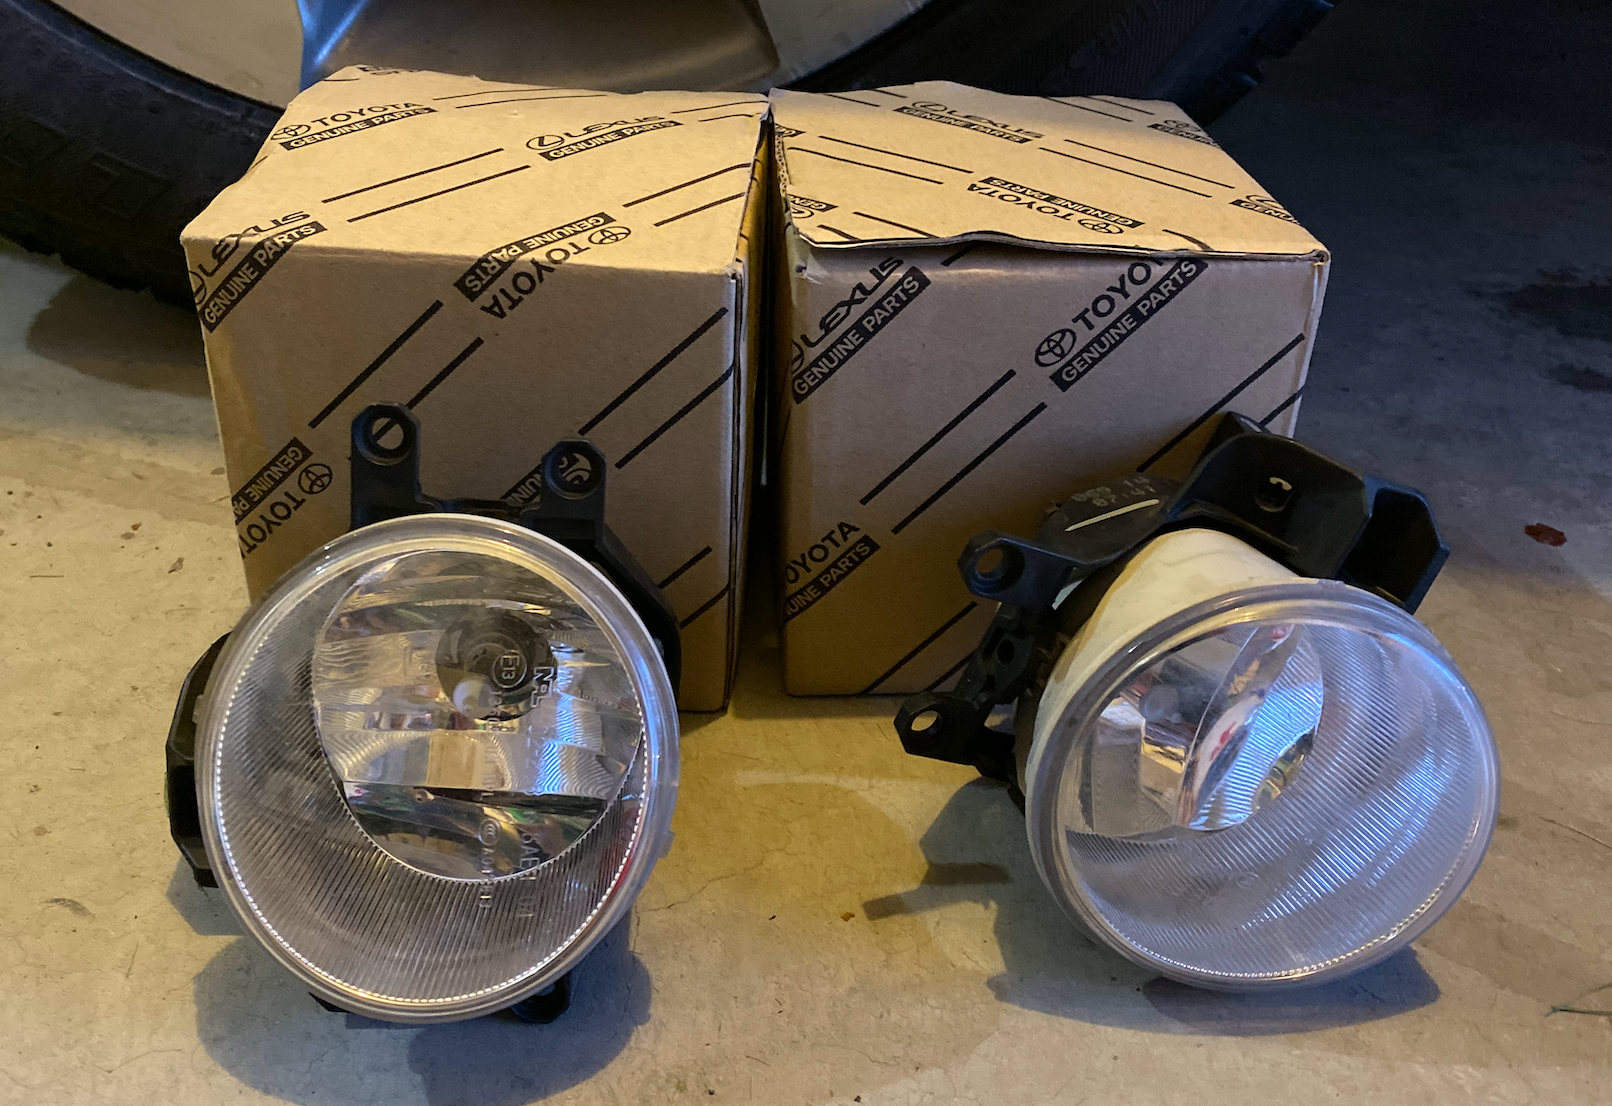 Lights - Lexus OEM Foglights - Used - 2010 to 2015 Lexus RX350 - Philadelphia, PA 19104, United States